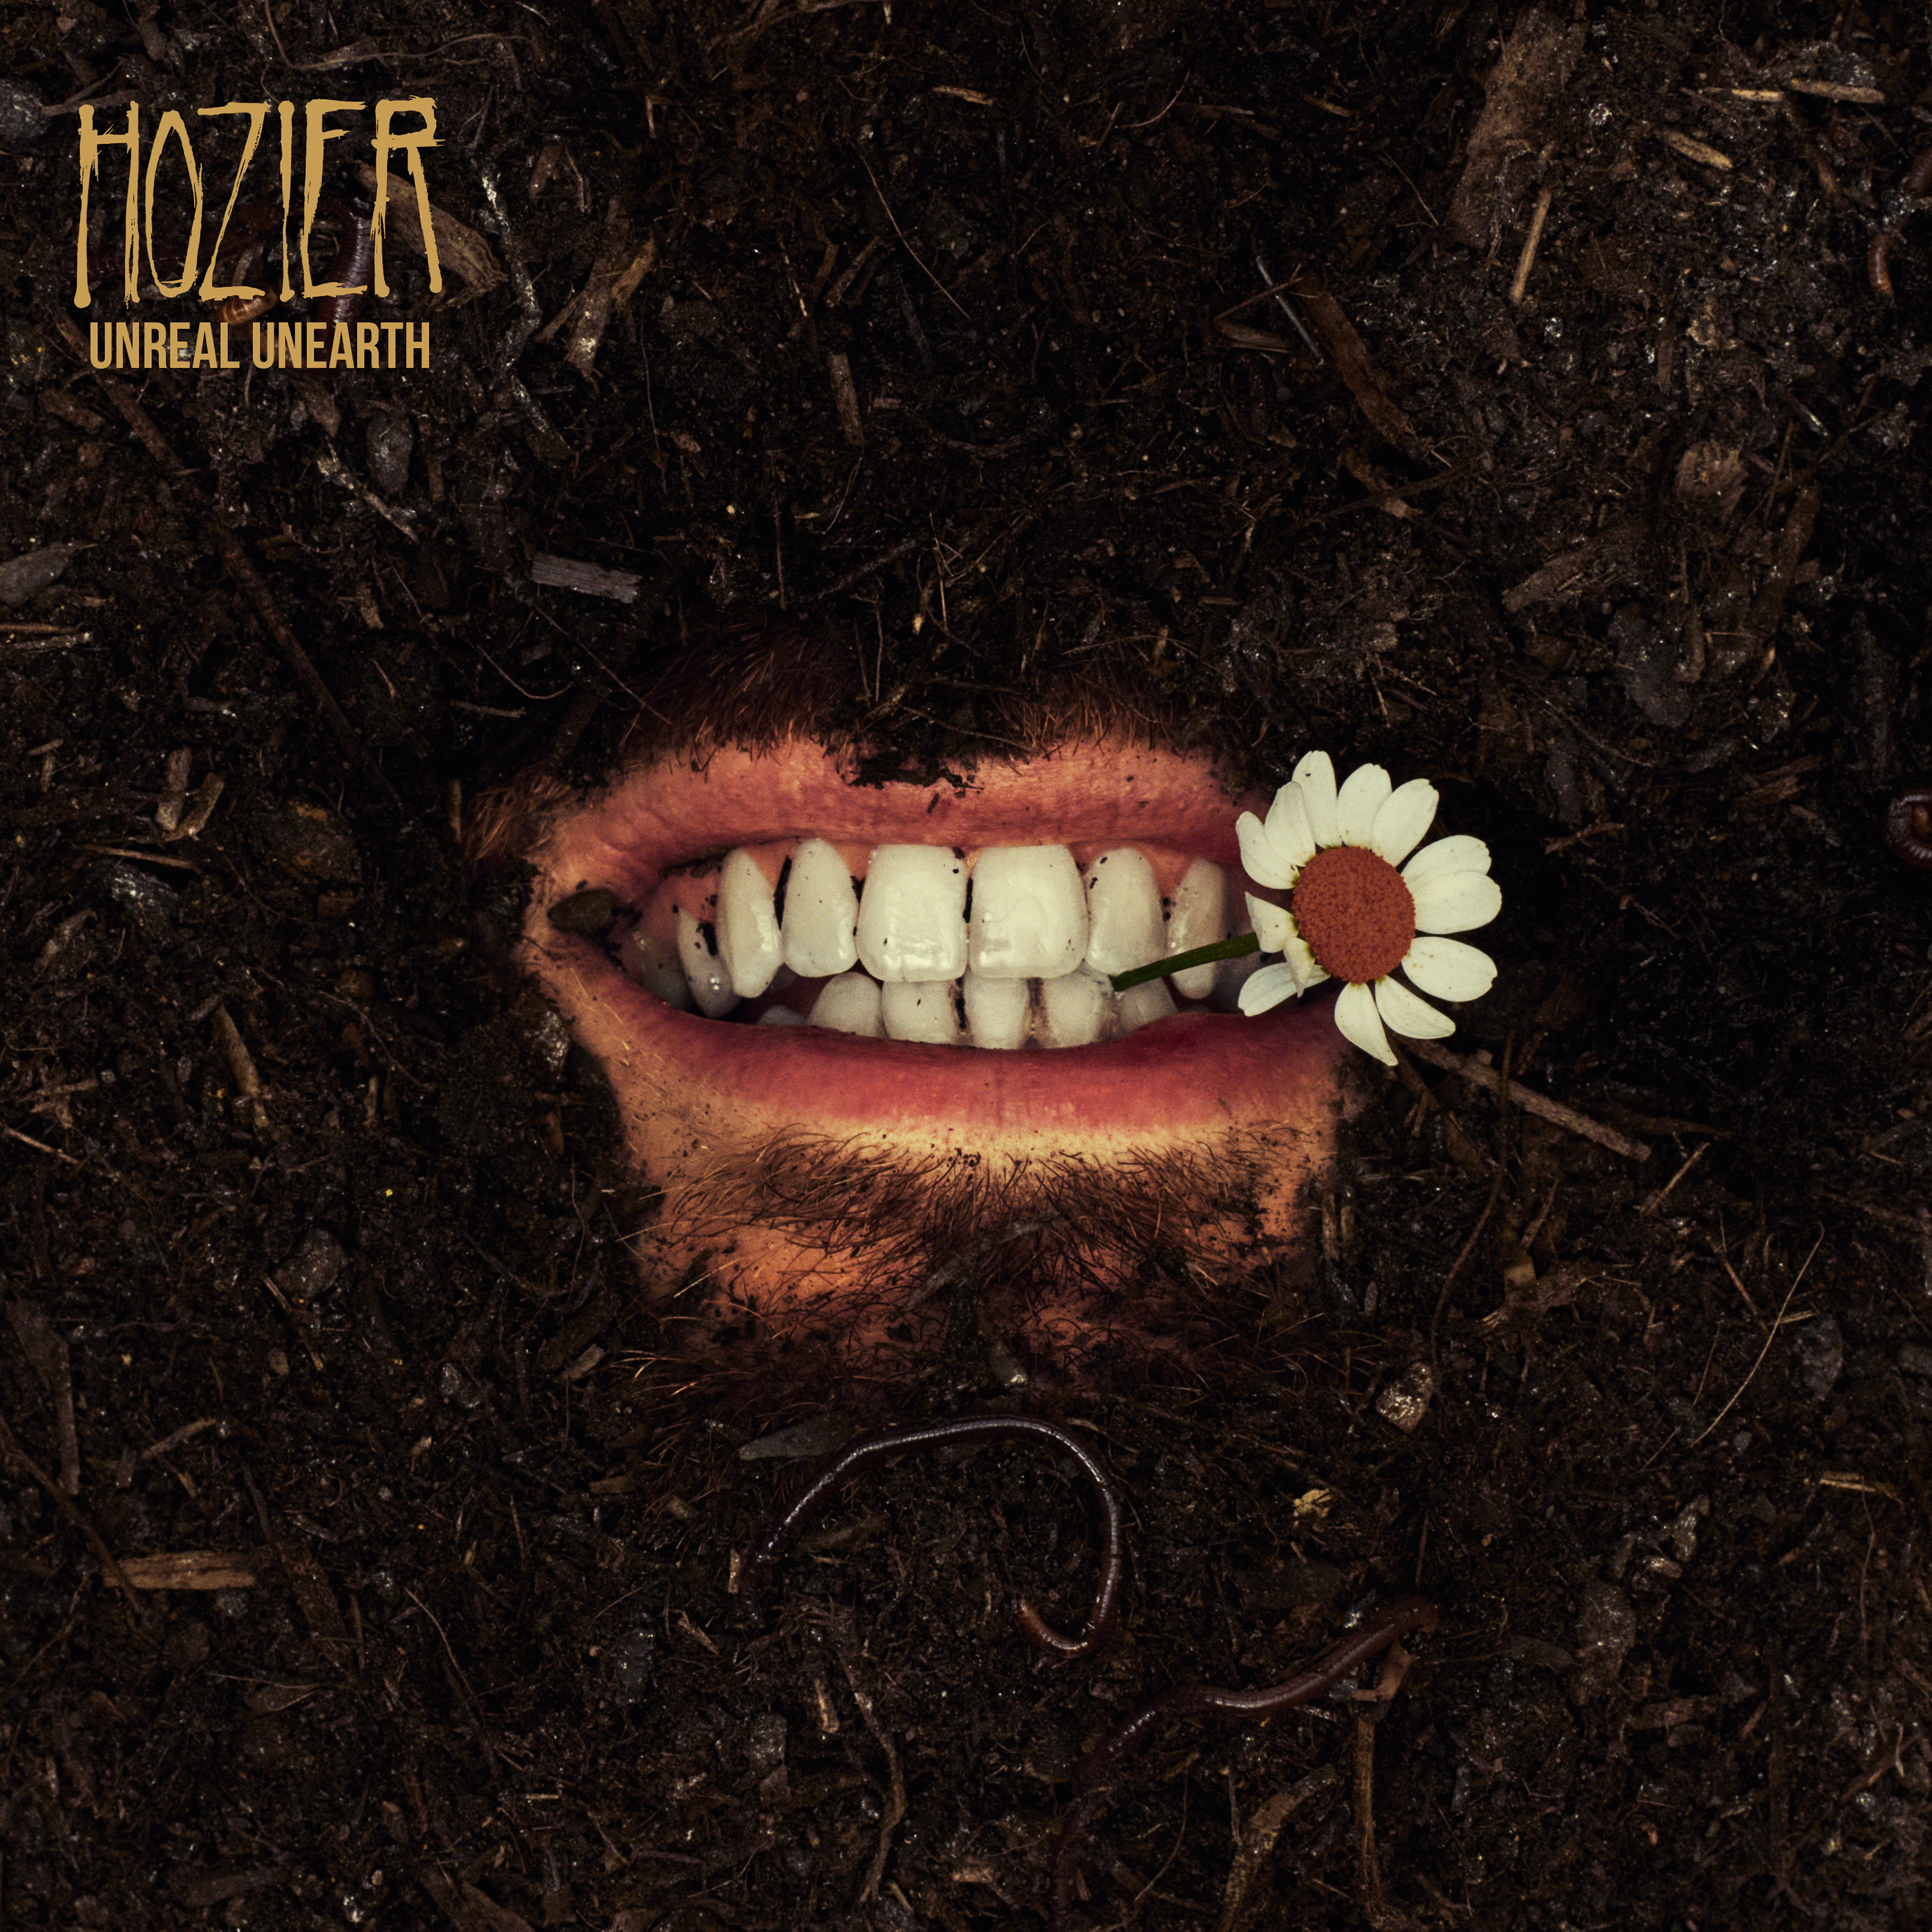 Hozier — Francesca cover artwork